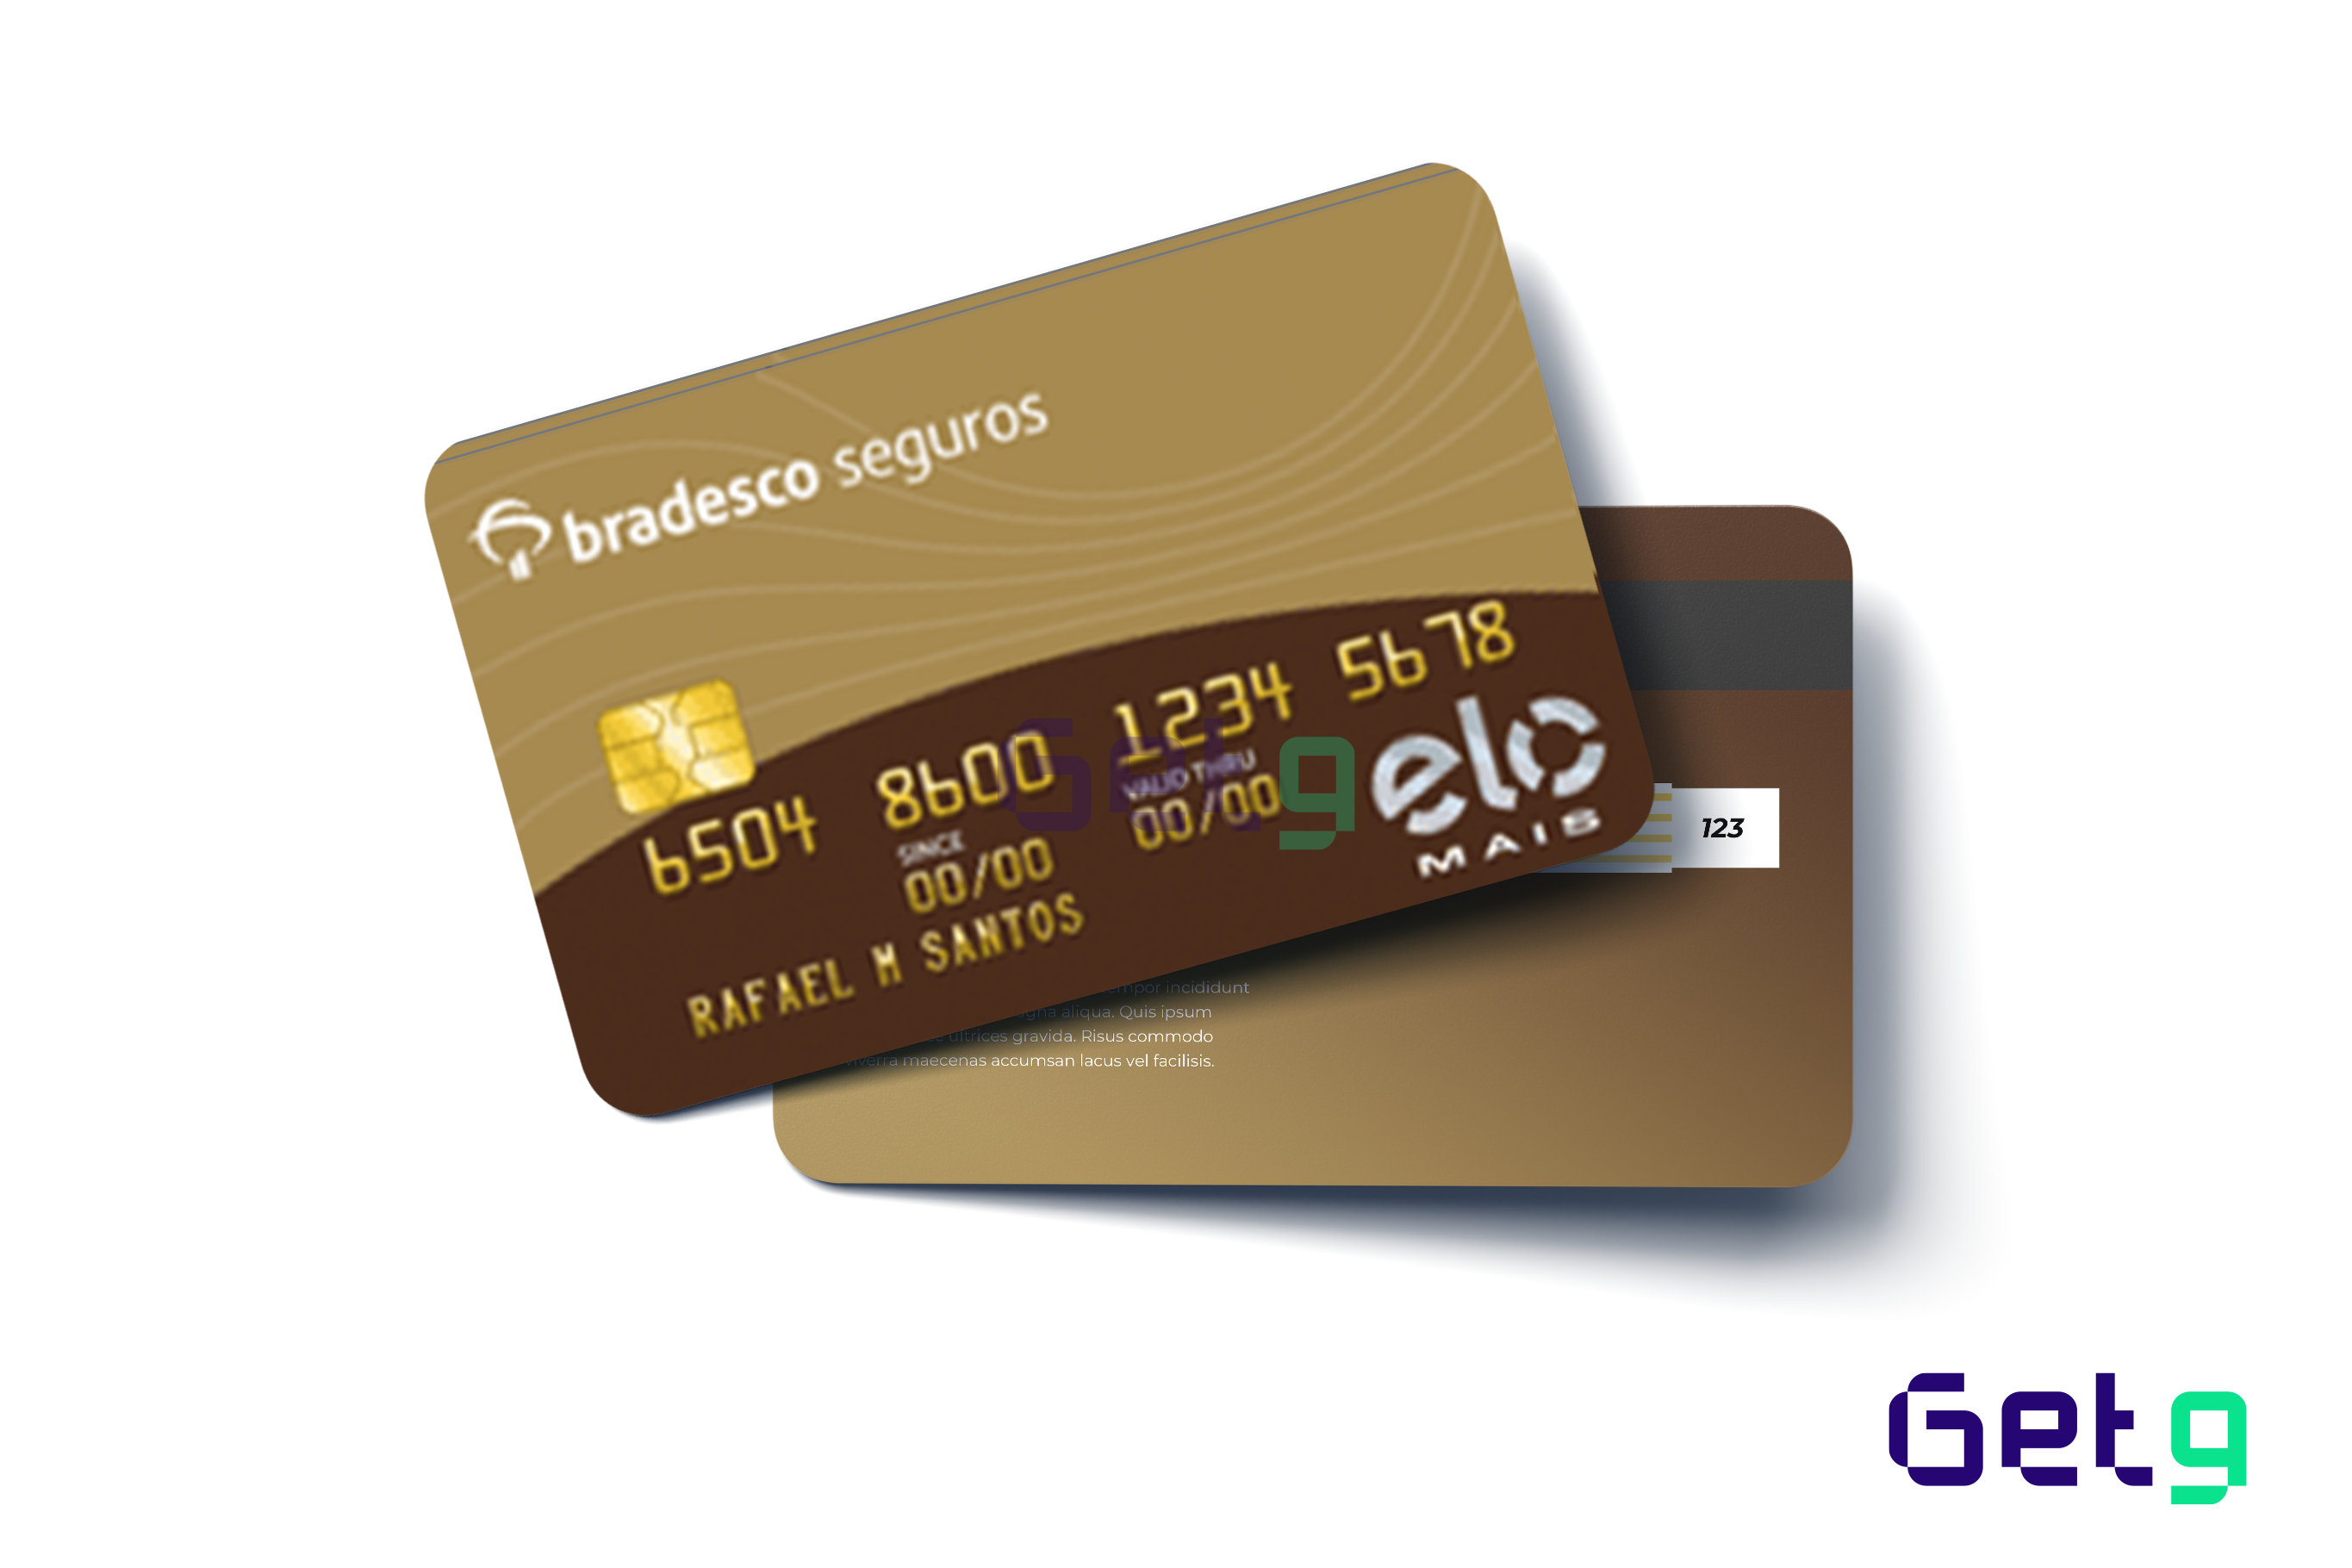 O cartão de crédito Bradesco Seguros é feito para seguros que desejam aliar descontos com toda a segurança do banco Bradesco.